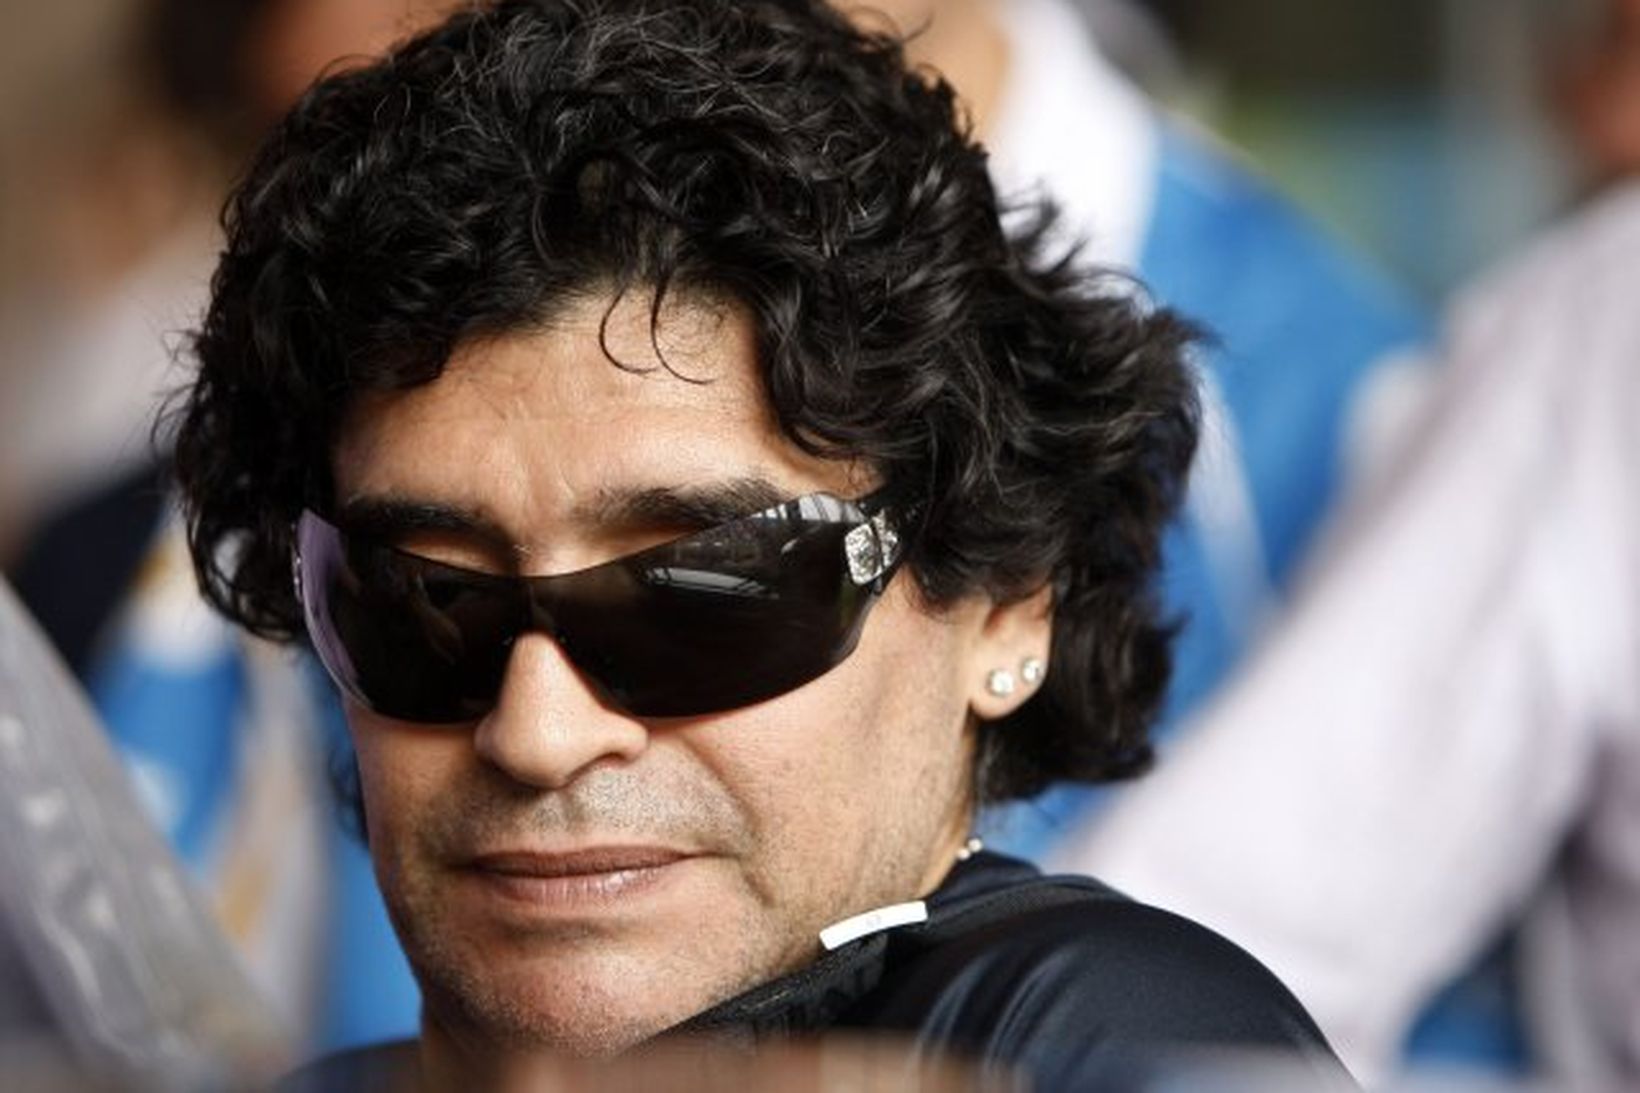 Diego Maradona hefur lifað skrautlegu lífi á undanförnum árum.